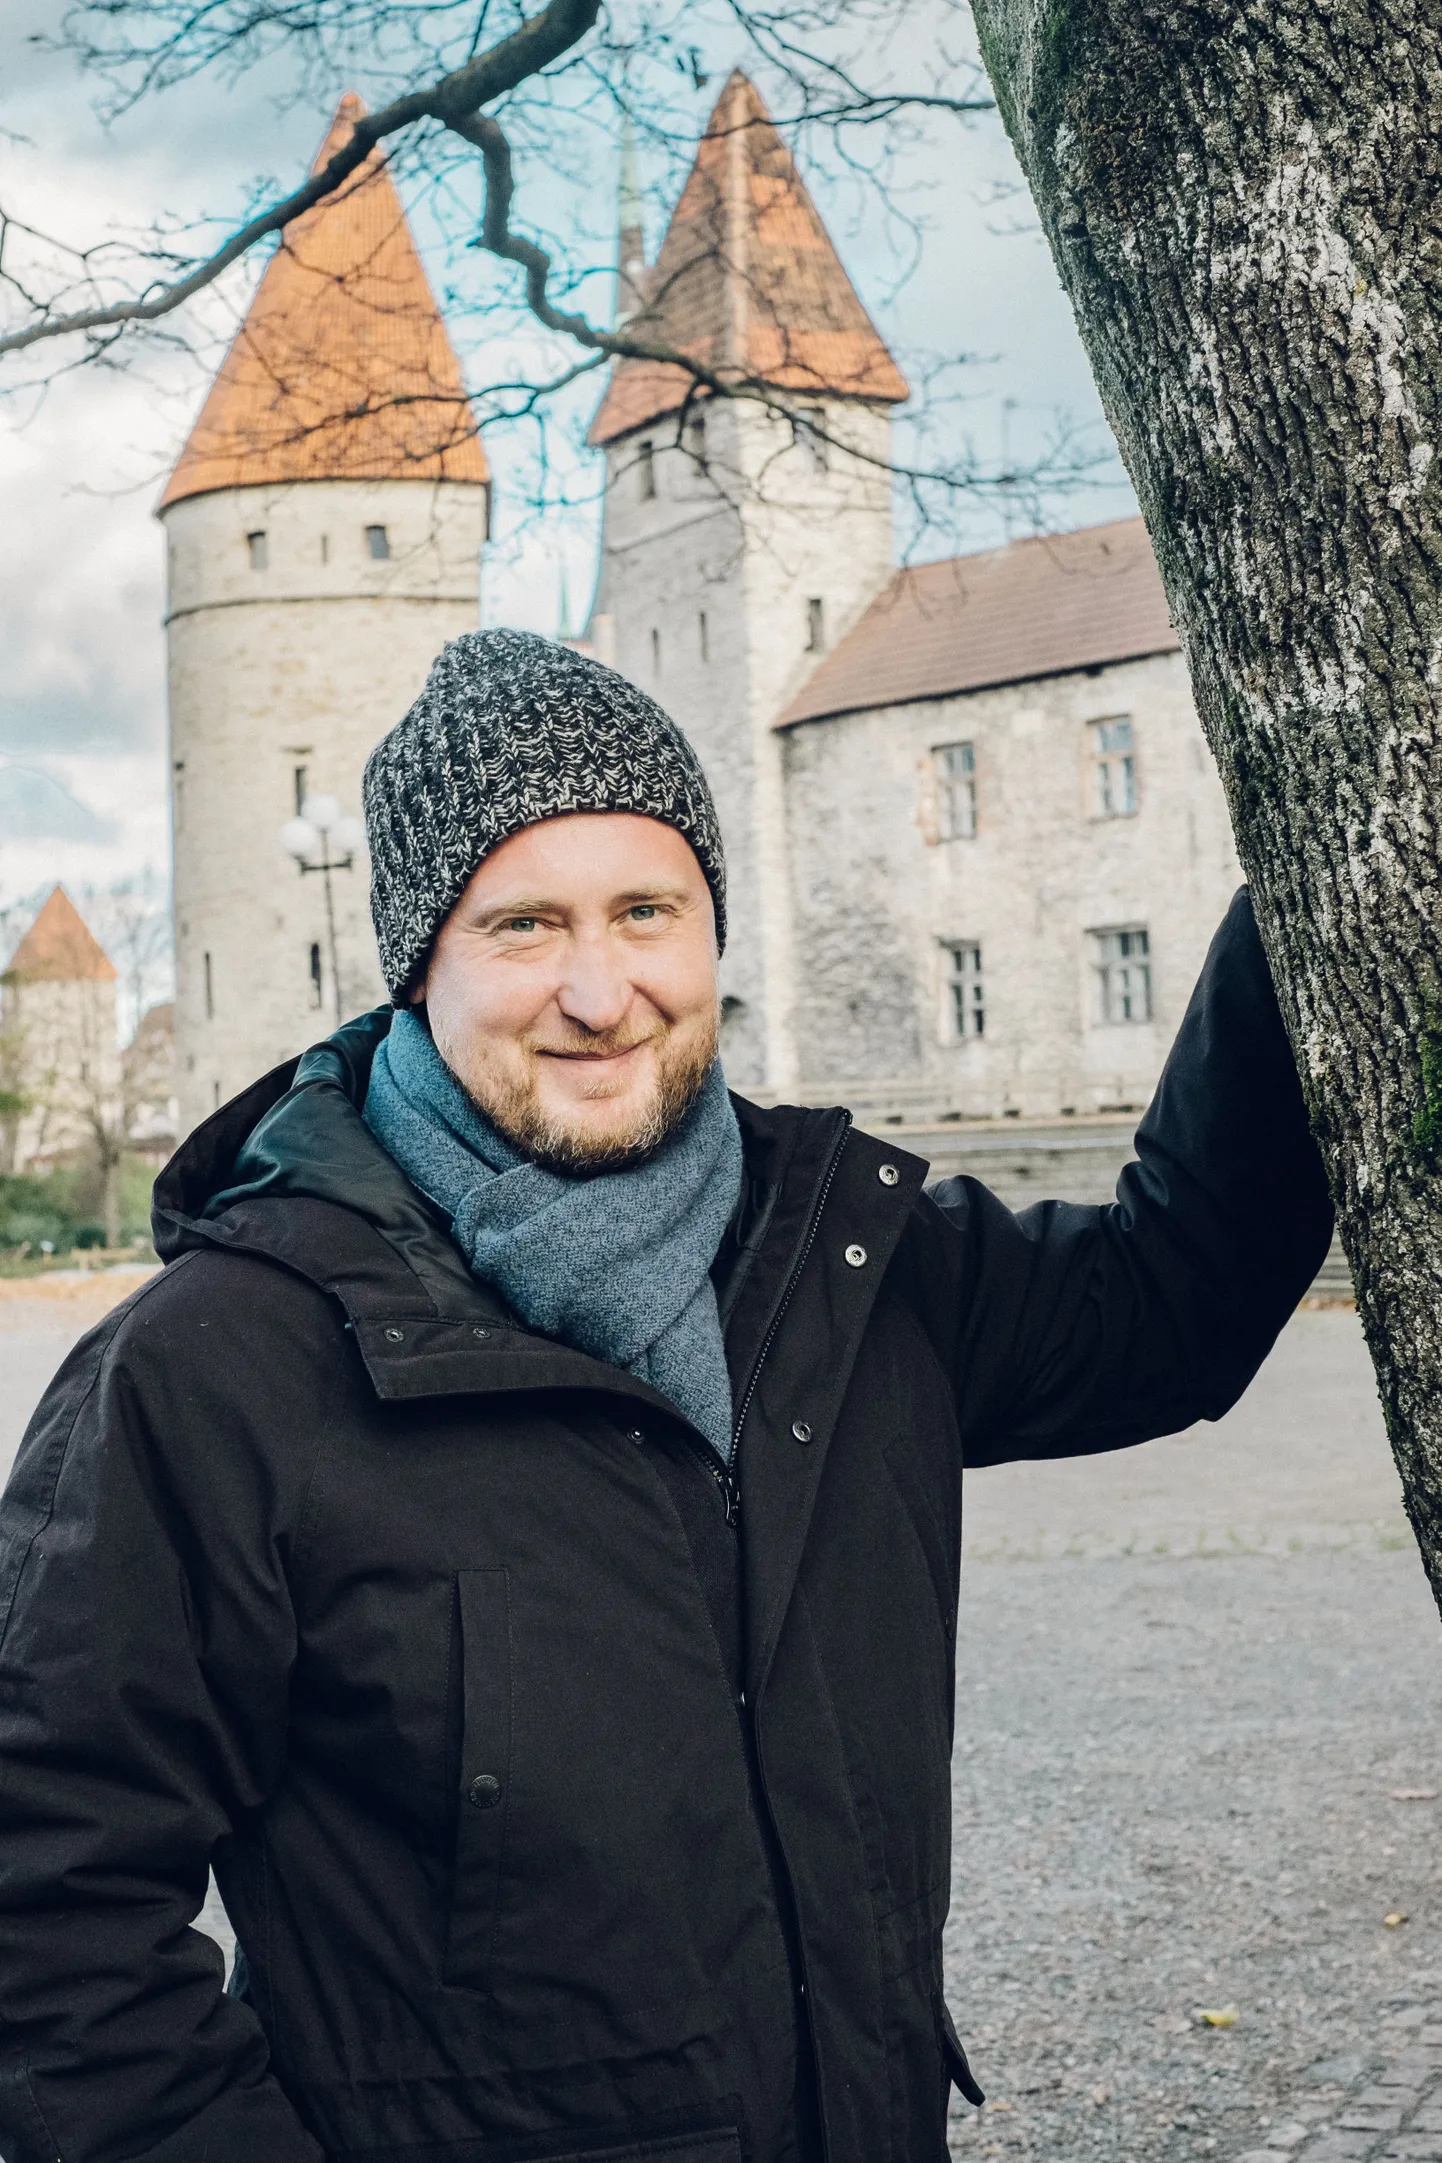 ”Mu lemmikpaik Tallinnas on Tornide väljak ja selle ümbrus. Siin tunnen, kuidas Eesti ja mu enese lood seotud on,” tõdeb luguderääkija Jaanus Rohumaa.